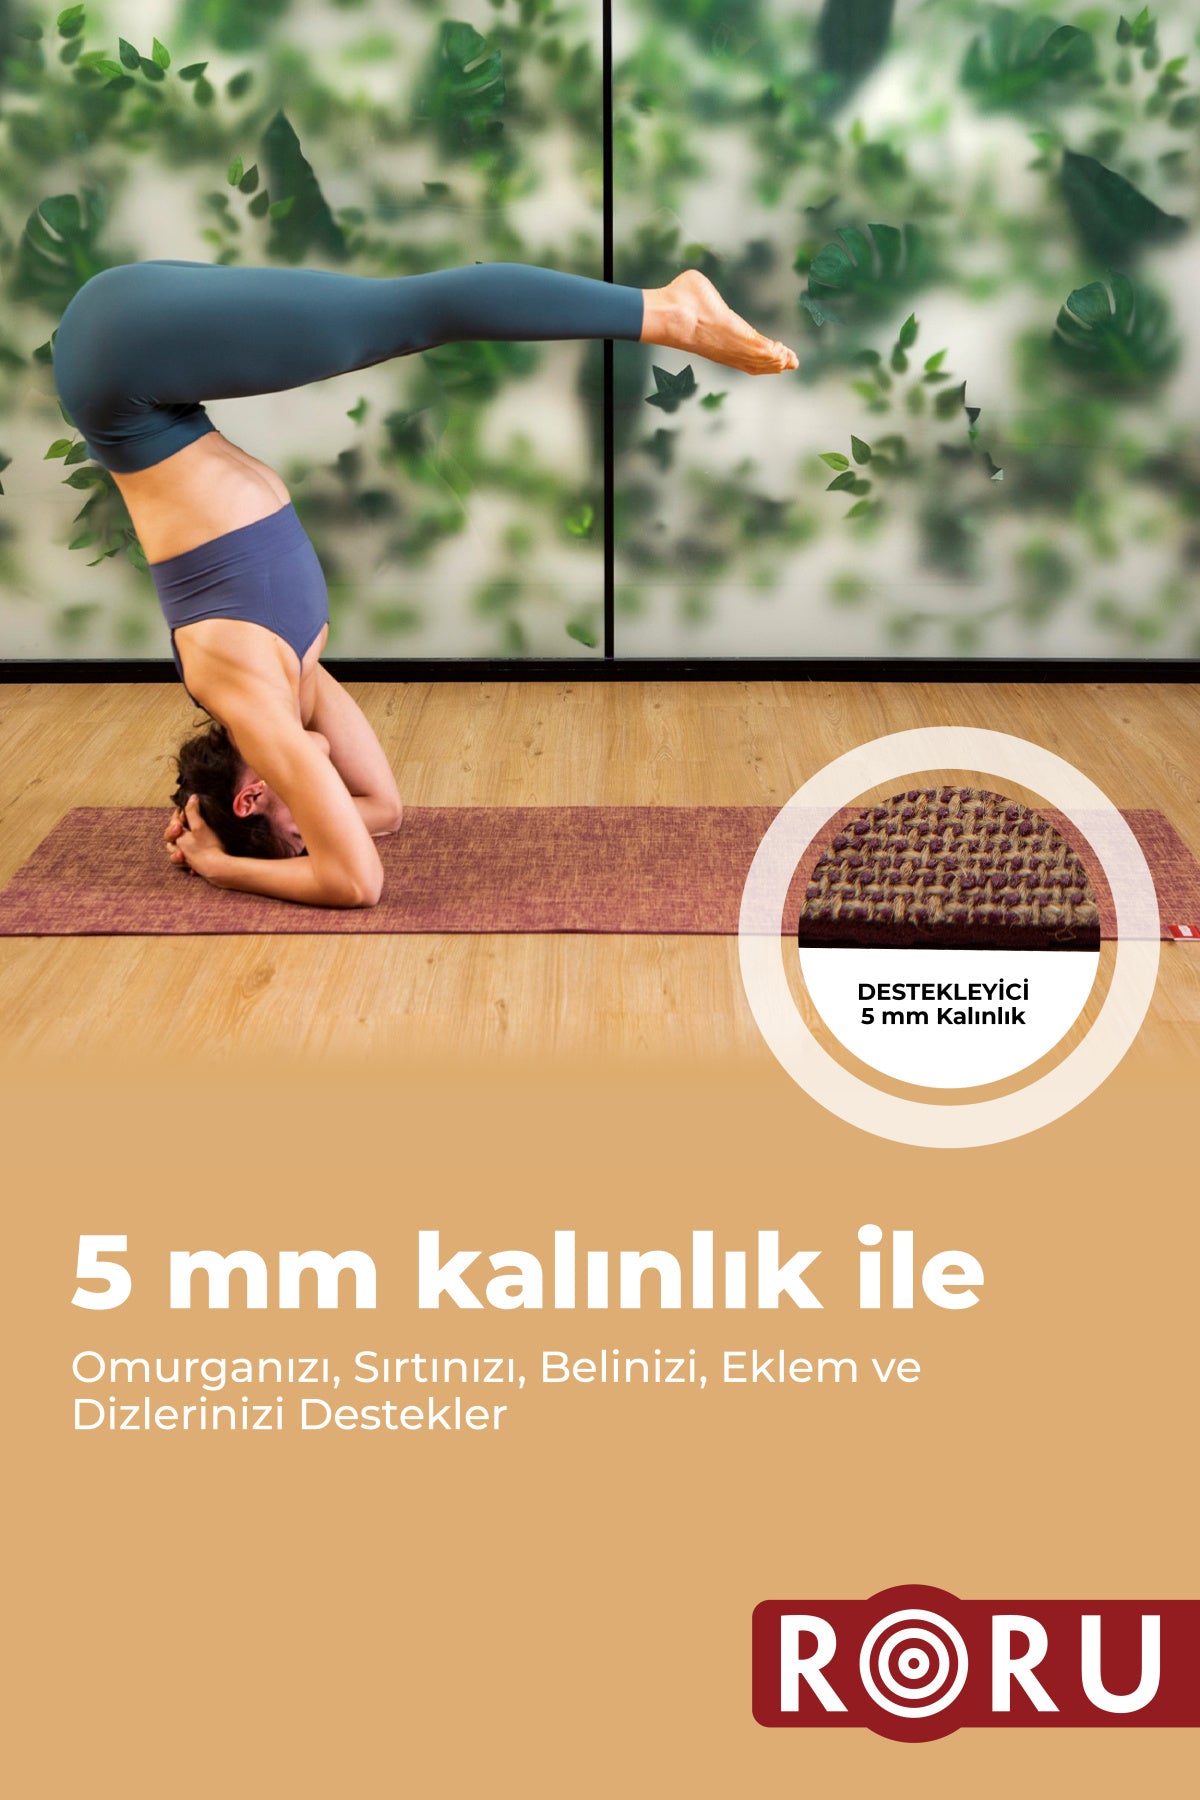 Roru Concept Doğal Jüt Yoga Egzersiz Matı 173 x 61 cm 5 mm Kuru, Az - Orta Terleyen Eller İçin, Turkuaz